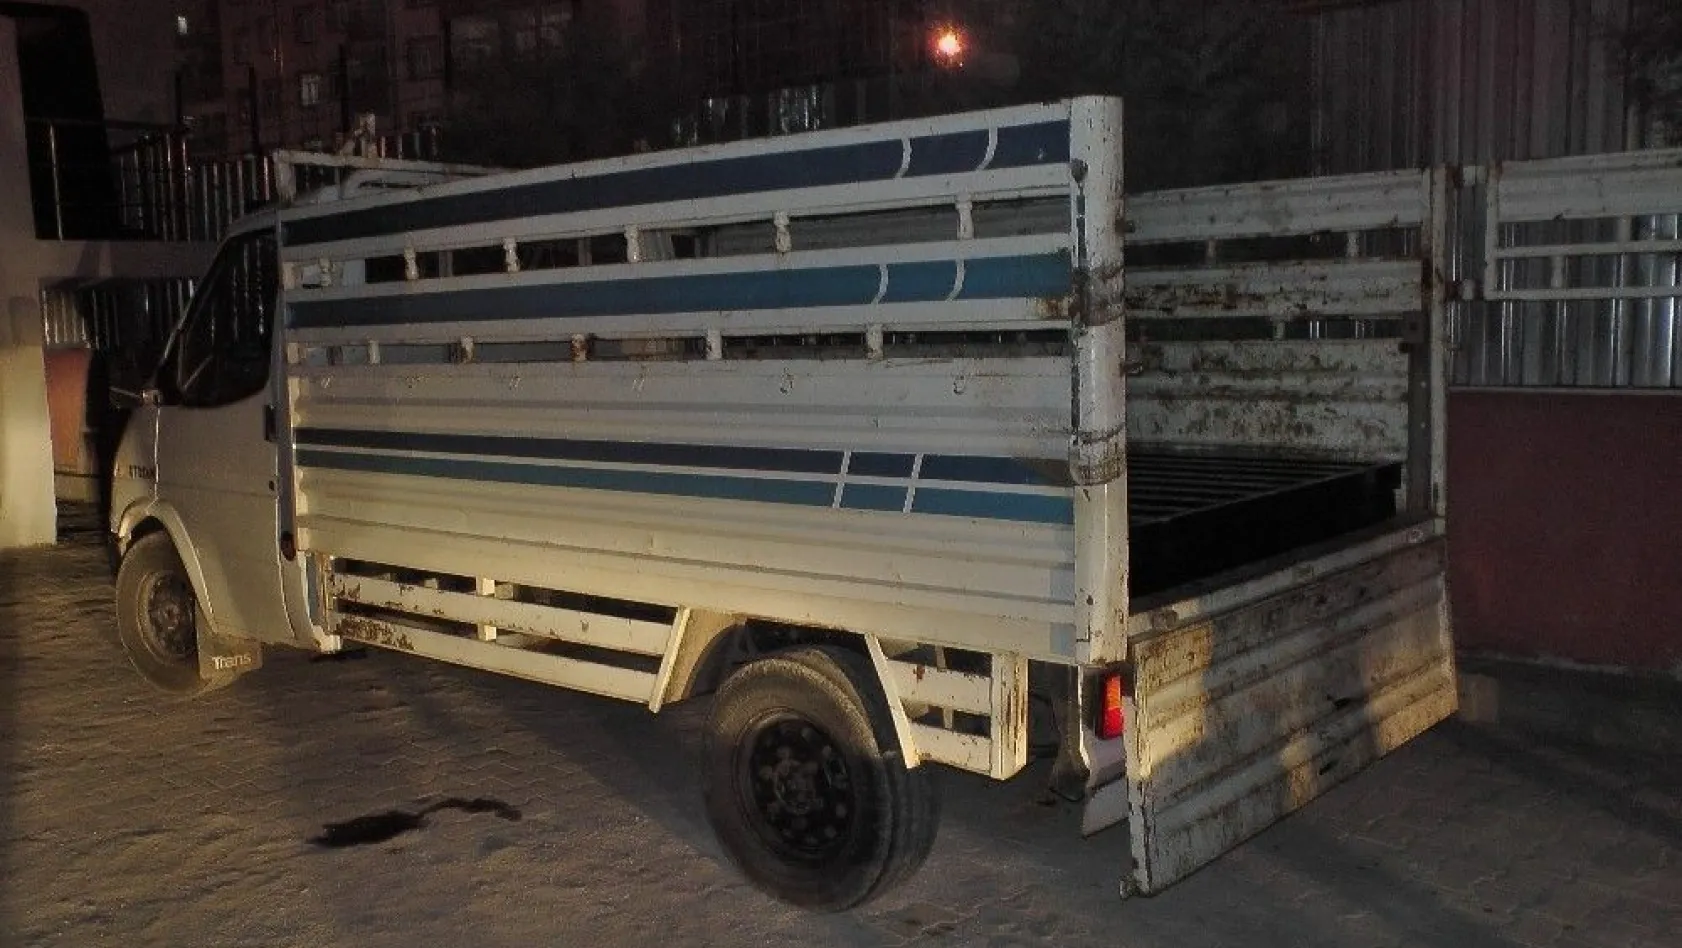 Diyarbakır'da kamyonetin demir profillerine gizlenmiş 50 kilo esrar ele geçirildi
